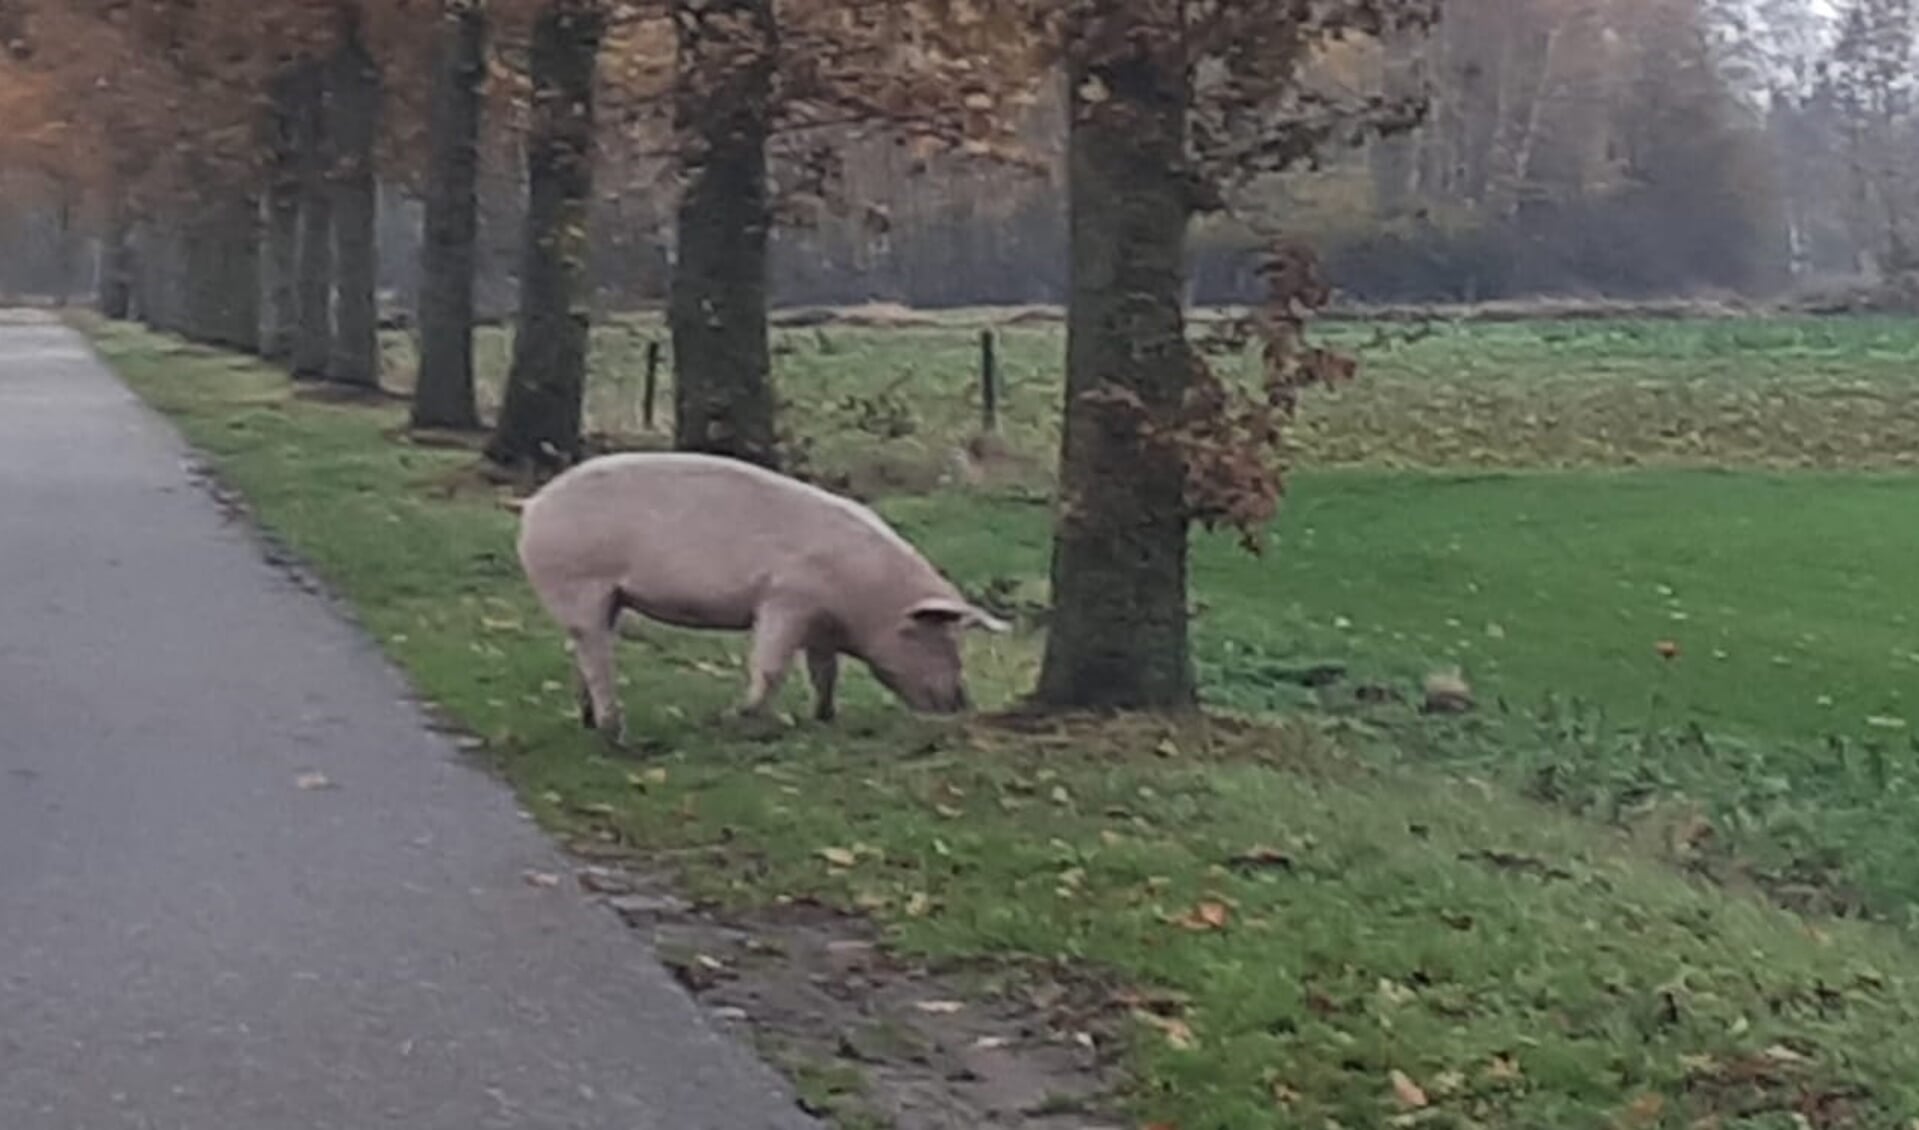 De Venrayse politie bracht een varken terug naar de eigenaar.